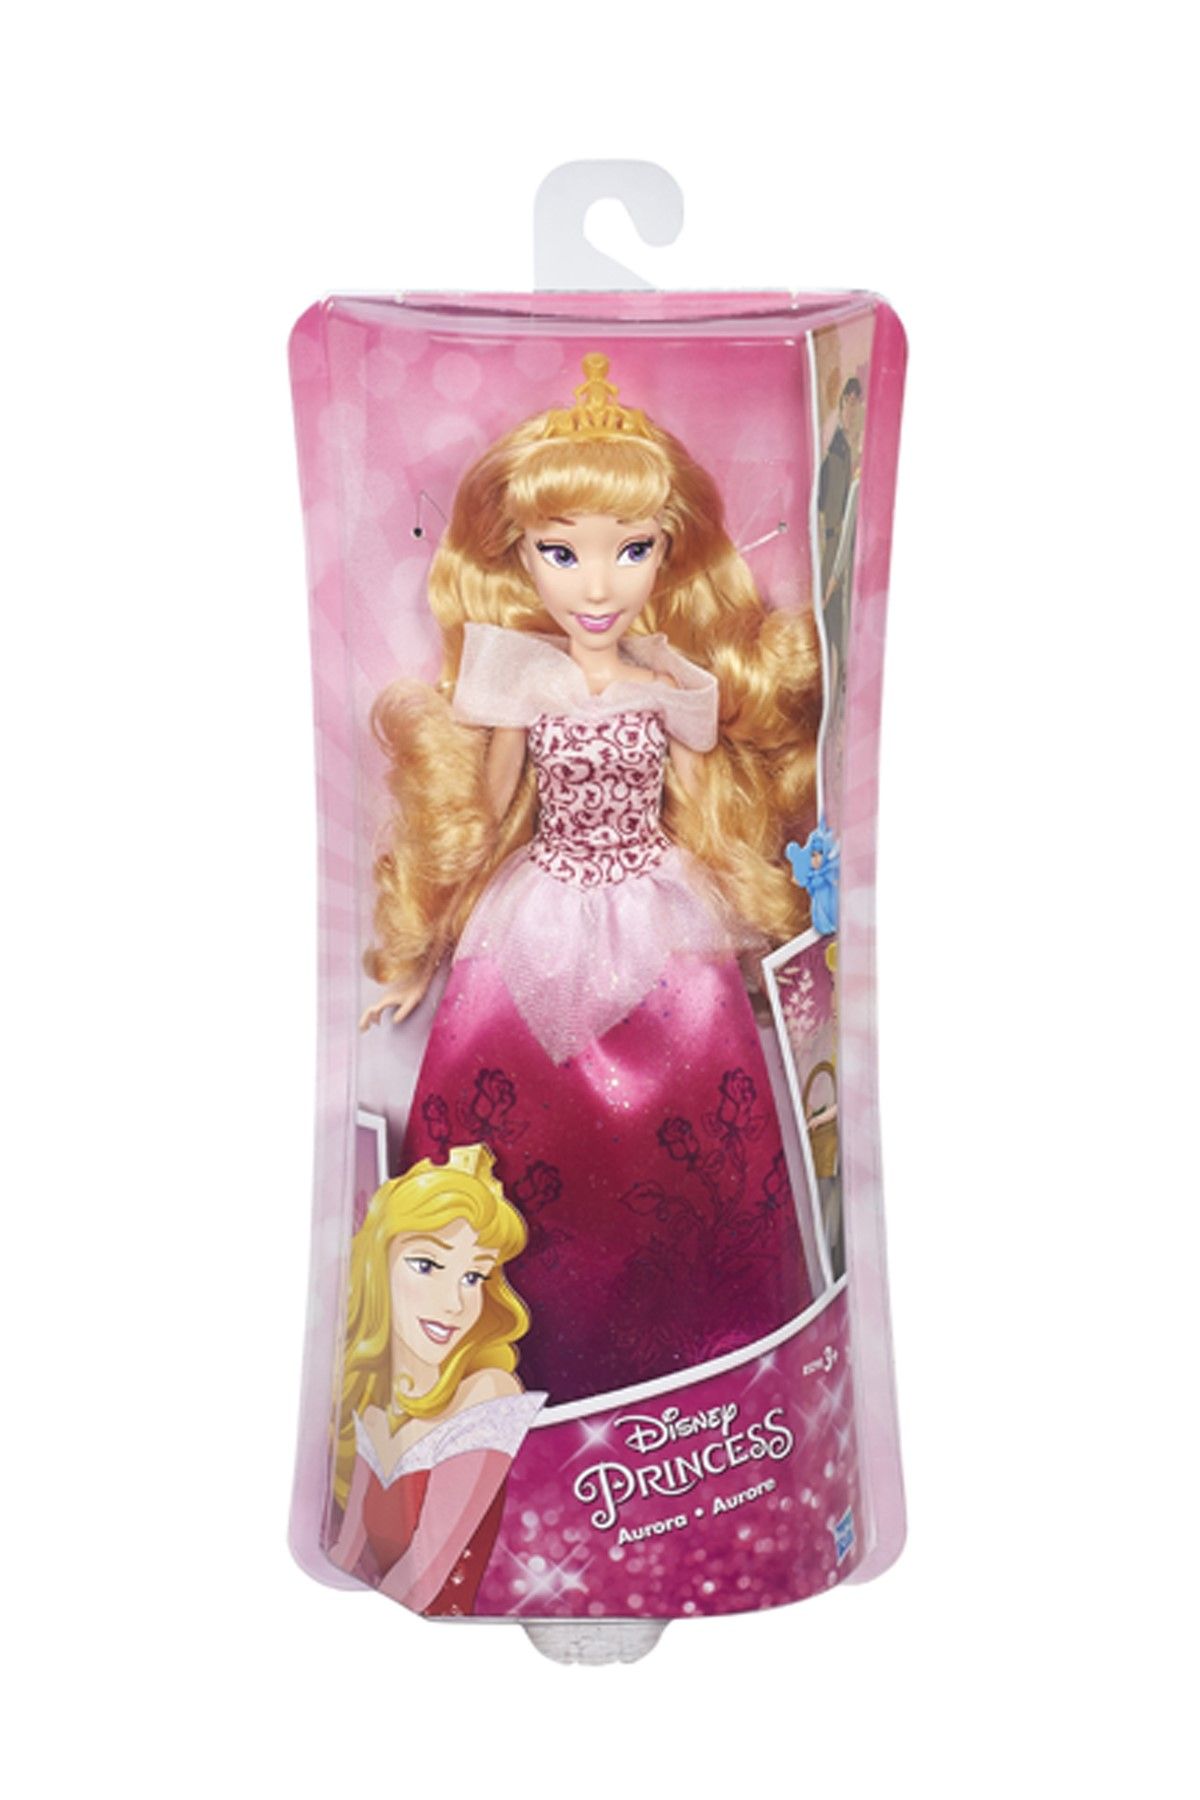 DİSNEY Disney Princess Işıltılı Prensesler Seri 2 B6446 - Aurora